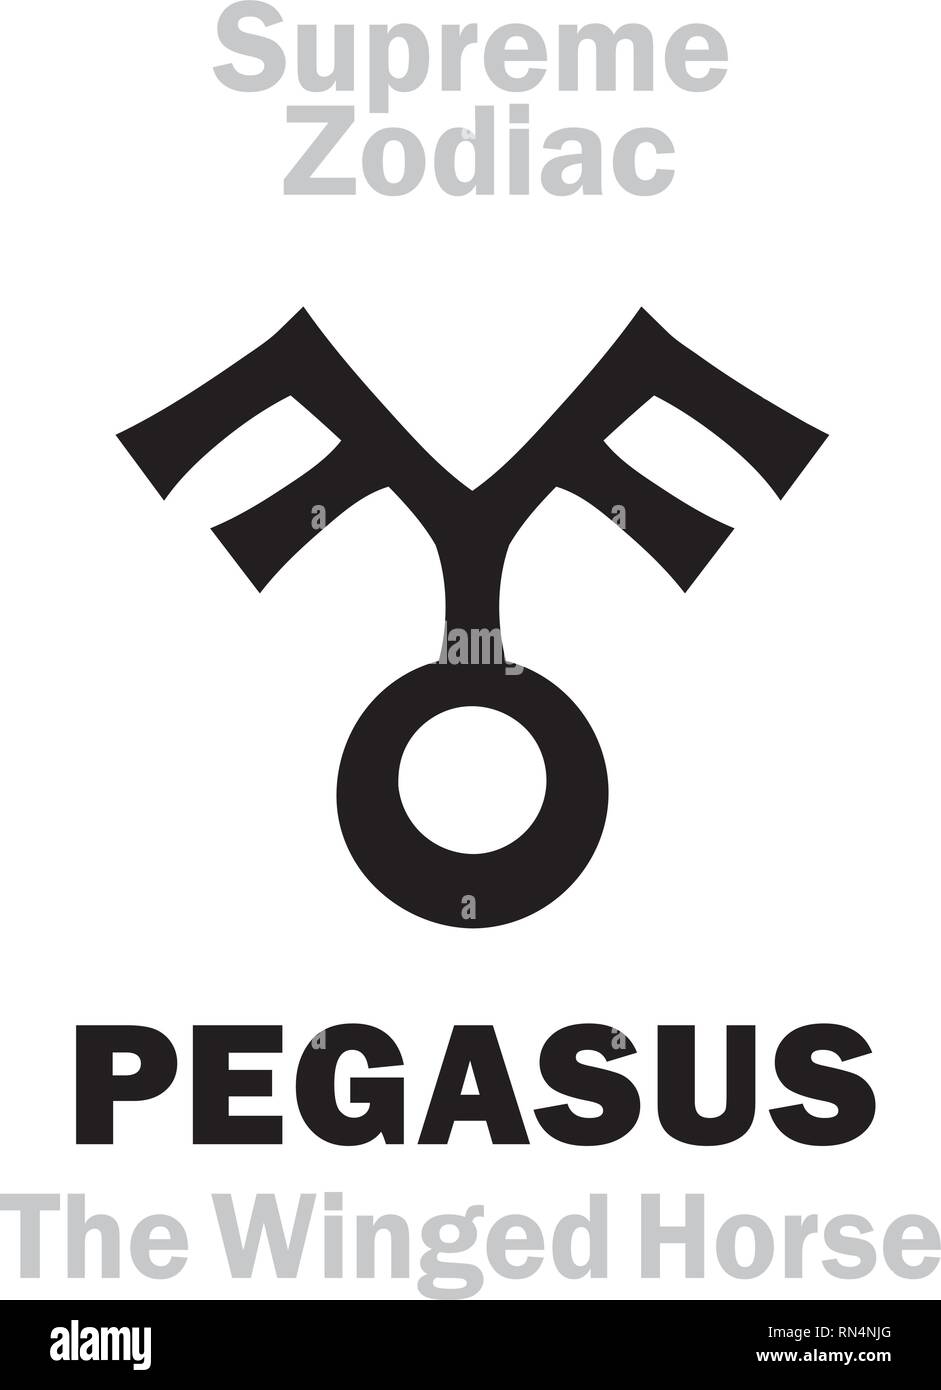 Astrologie Alphabet: PEGASUS" Volucer Equus" (Das geflügelte Pferd), Sternbild Pegasus. Zeichen der Obersten Zodiac (Externe Kreis). Hieroglyphische Symbol. Stock Vektor